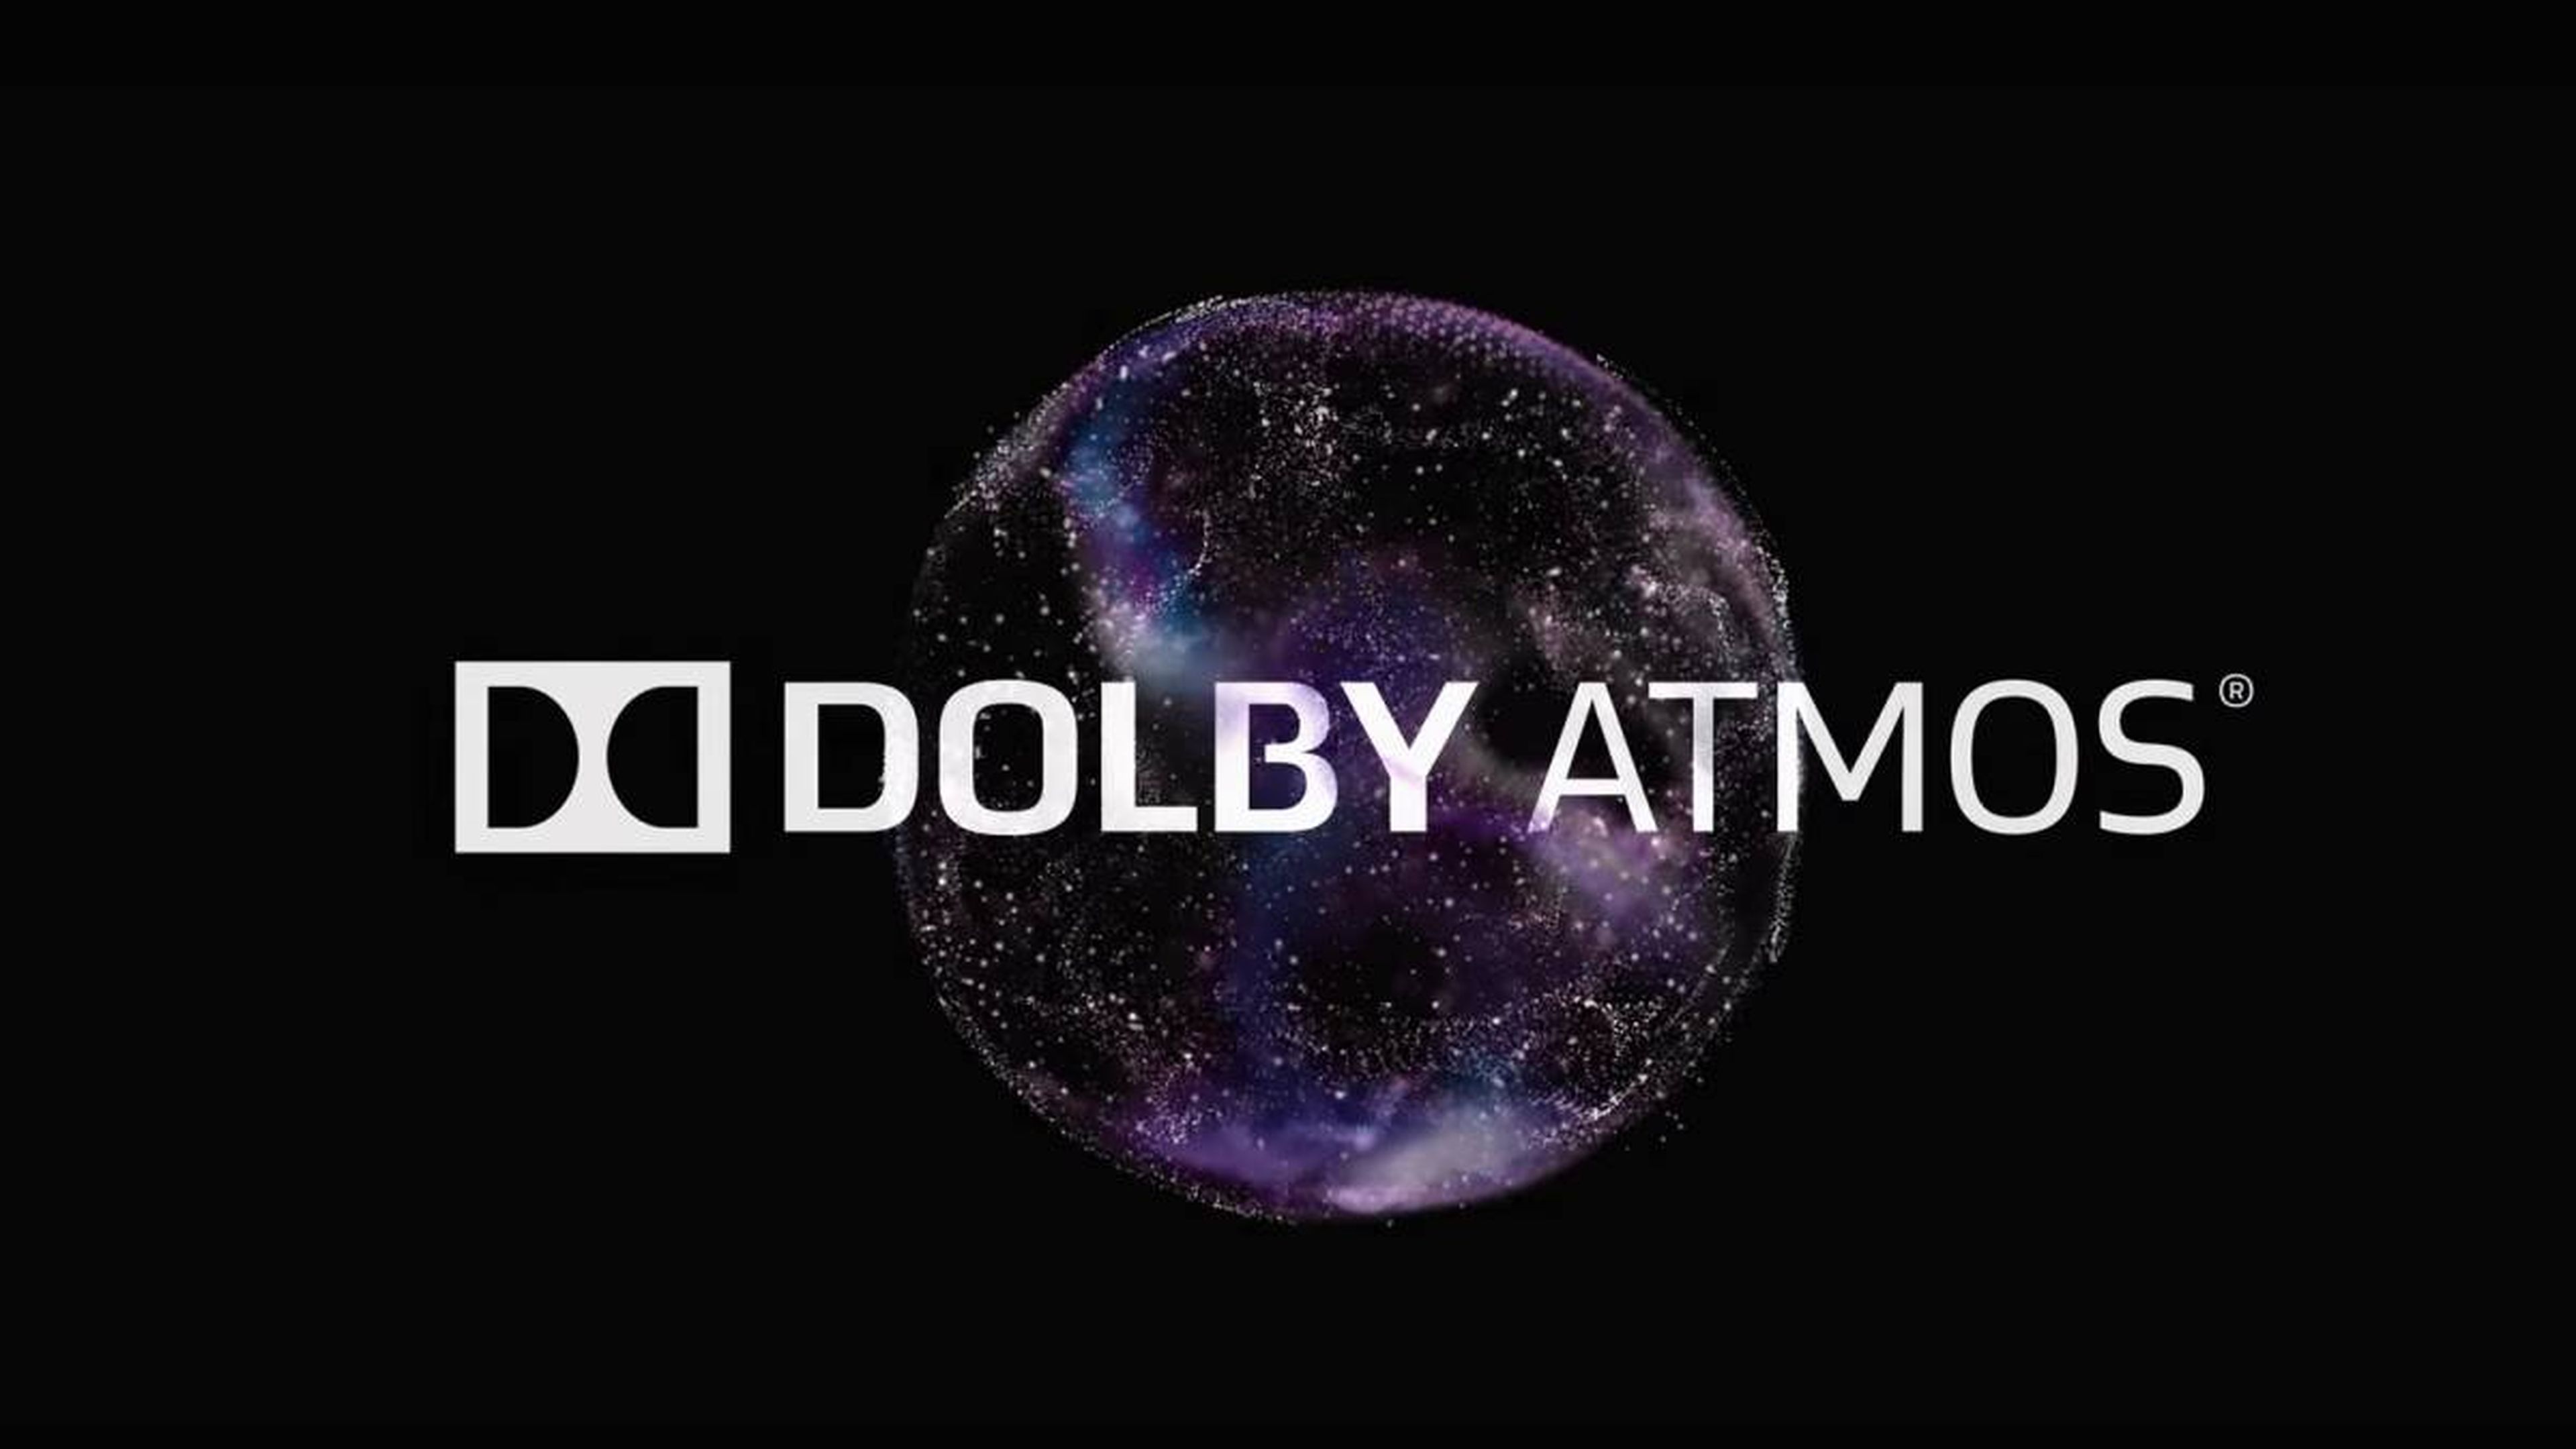 Dolby Atmos Mark Cerny